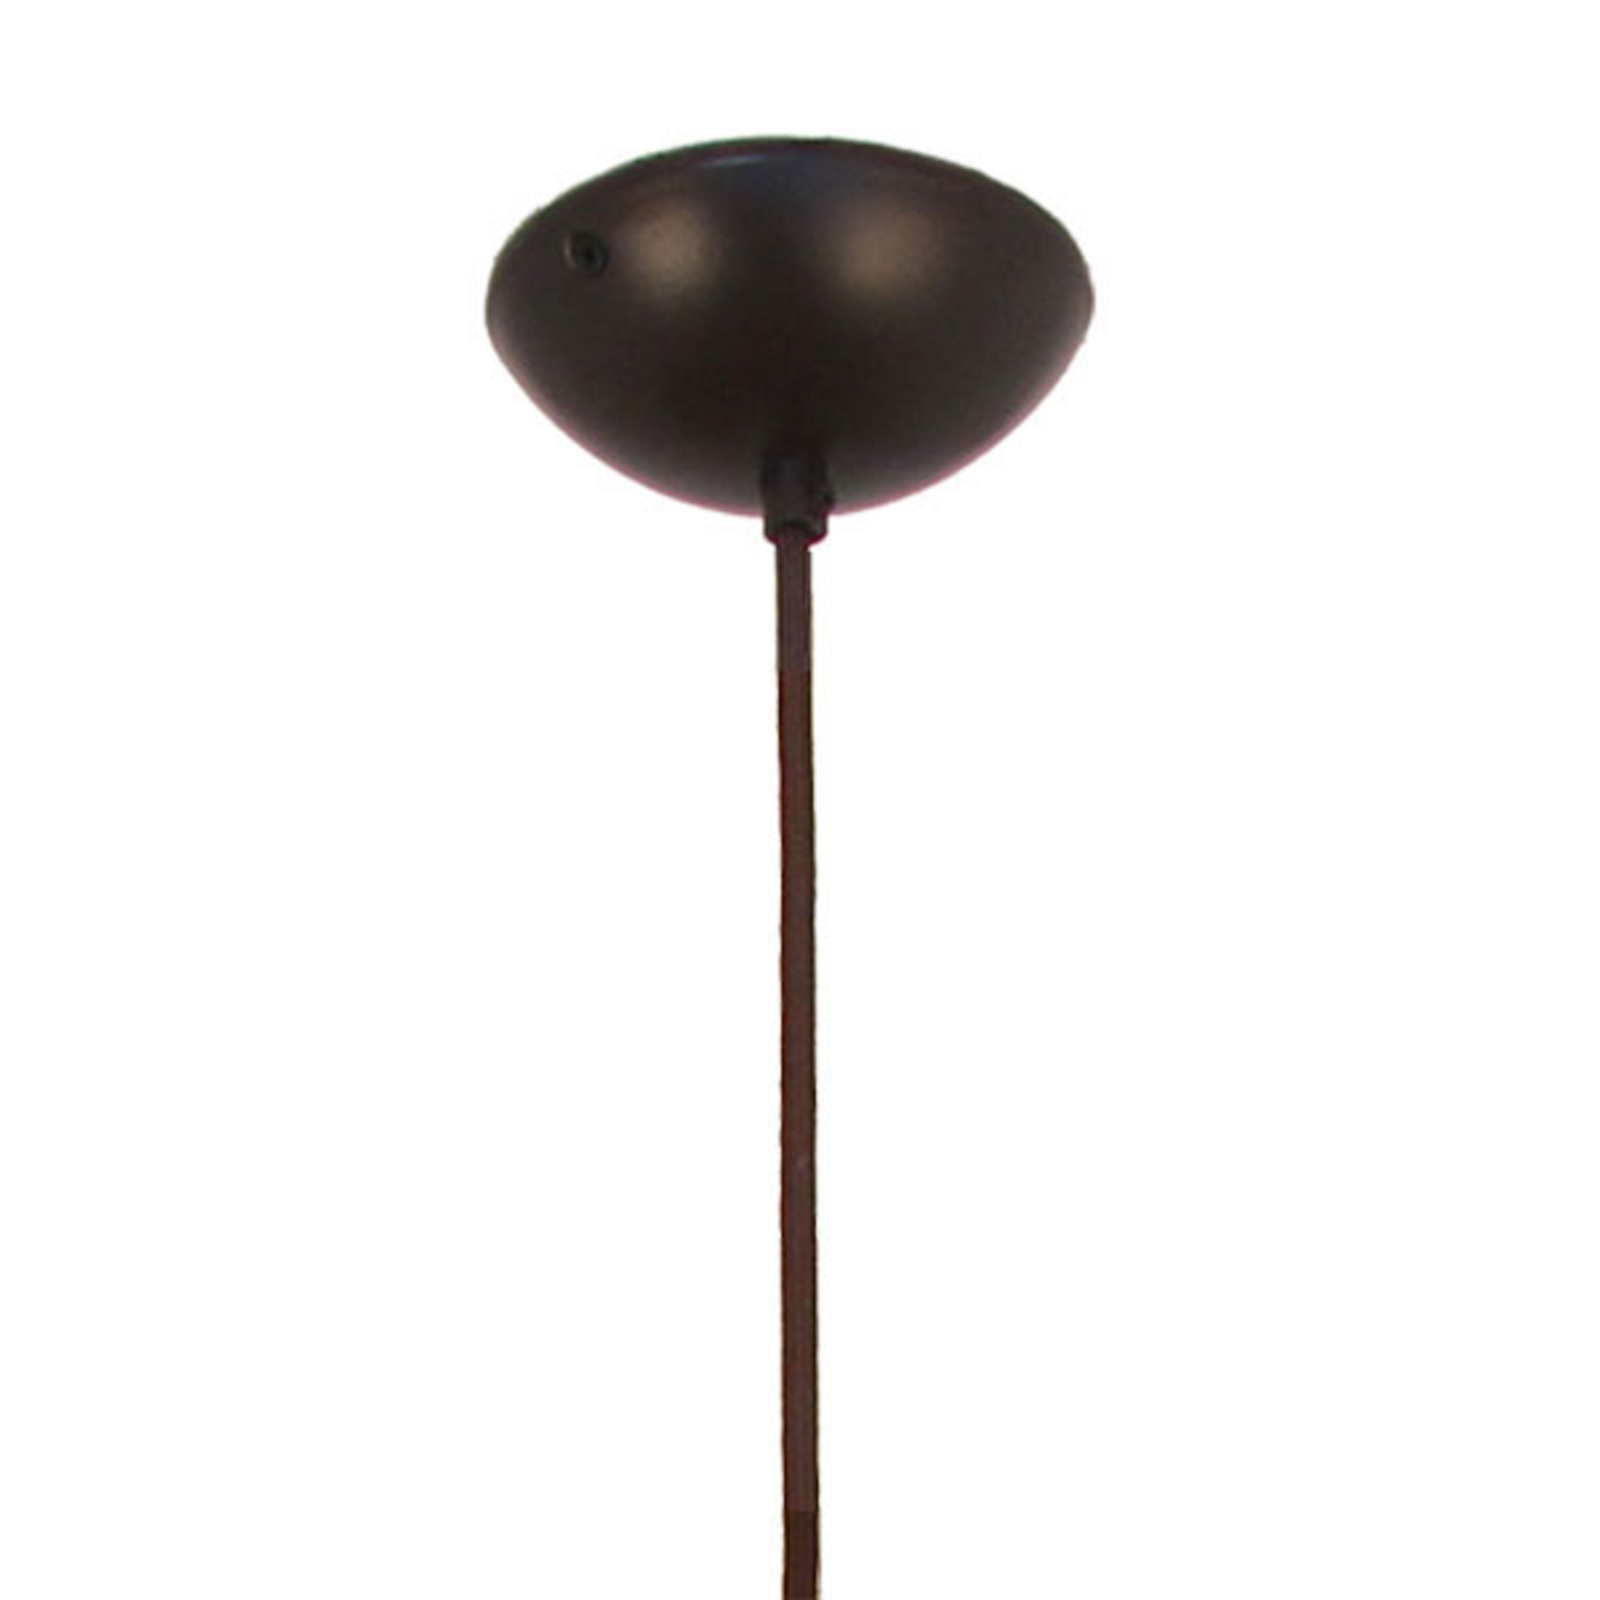 Menzel Solo hængelampe løgformet, brun-sort, 16 cm